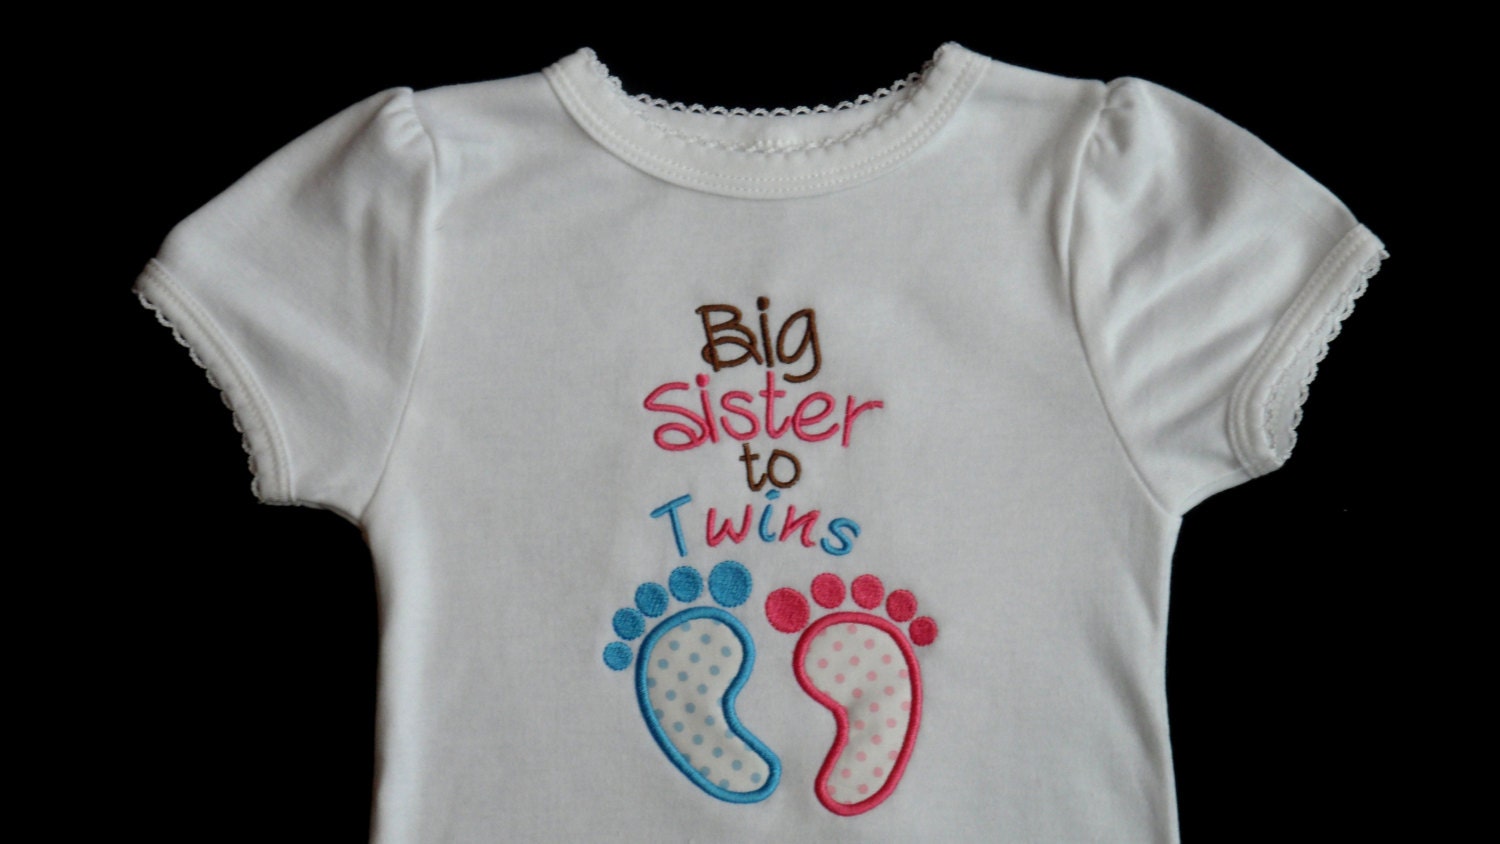 Big sister to twins shirt